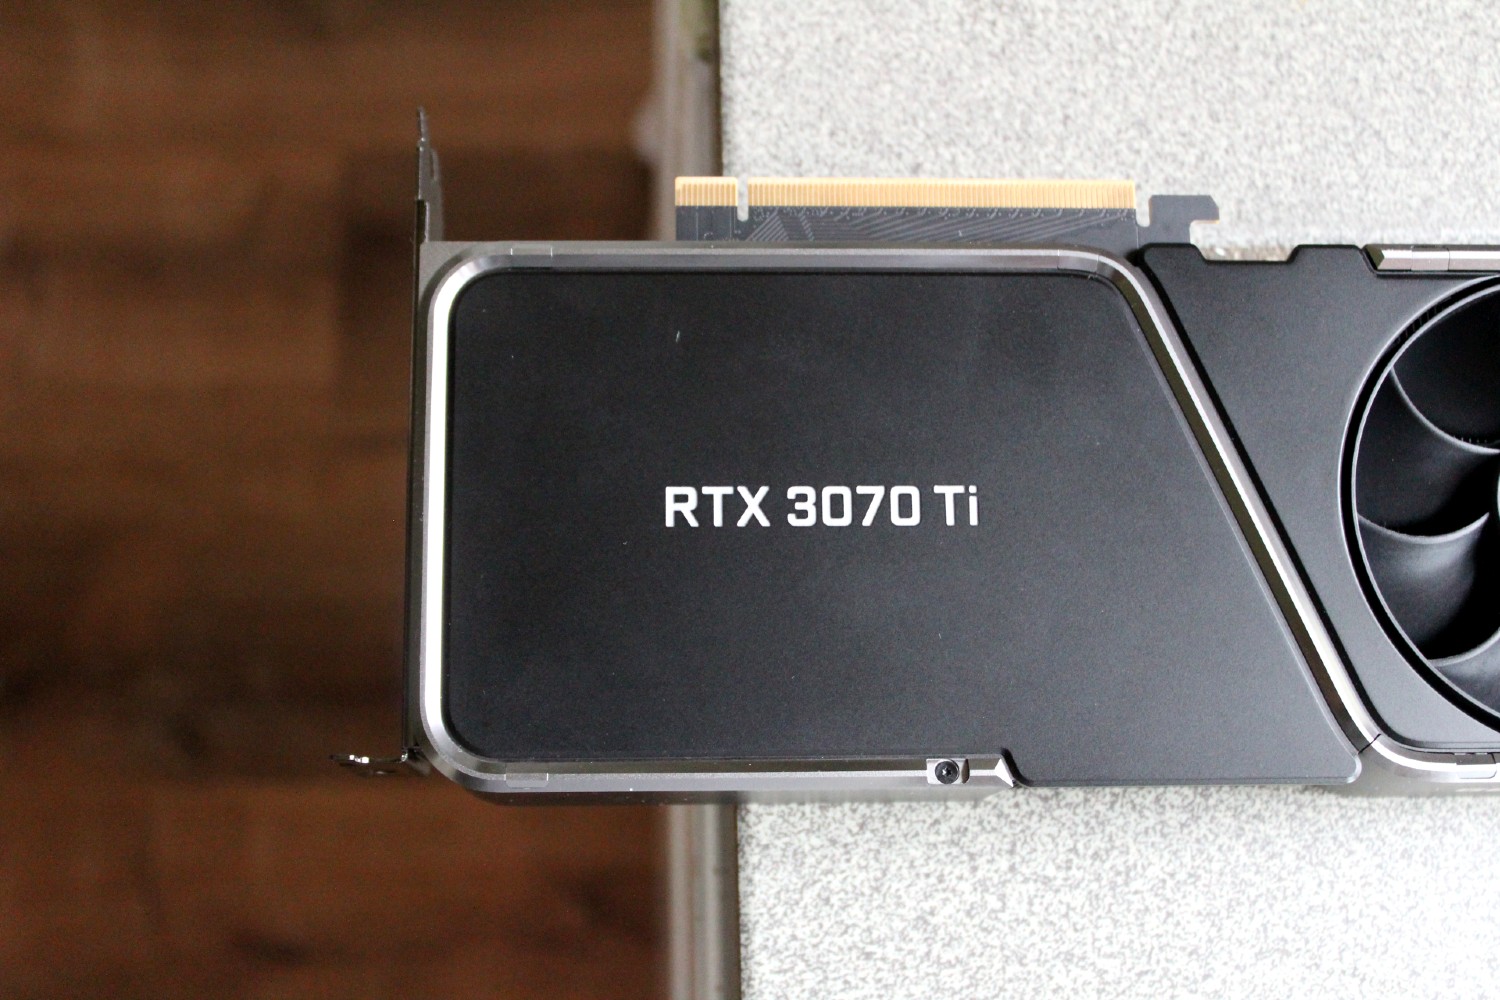 Placa gráfica RTX 3070 Ti da Nvidia.